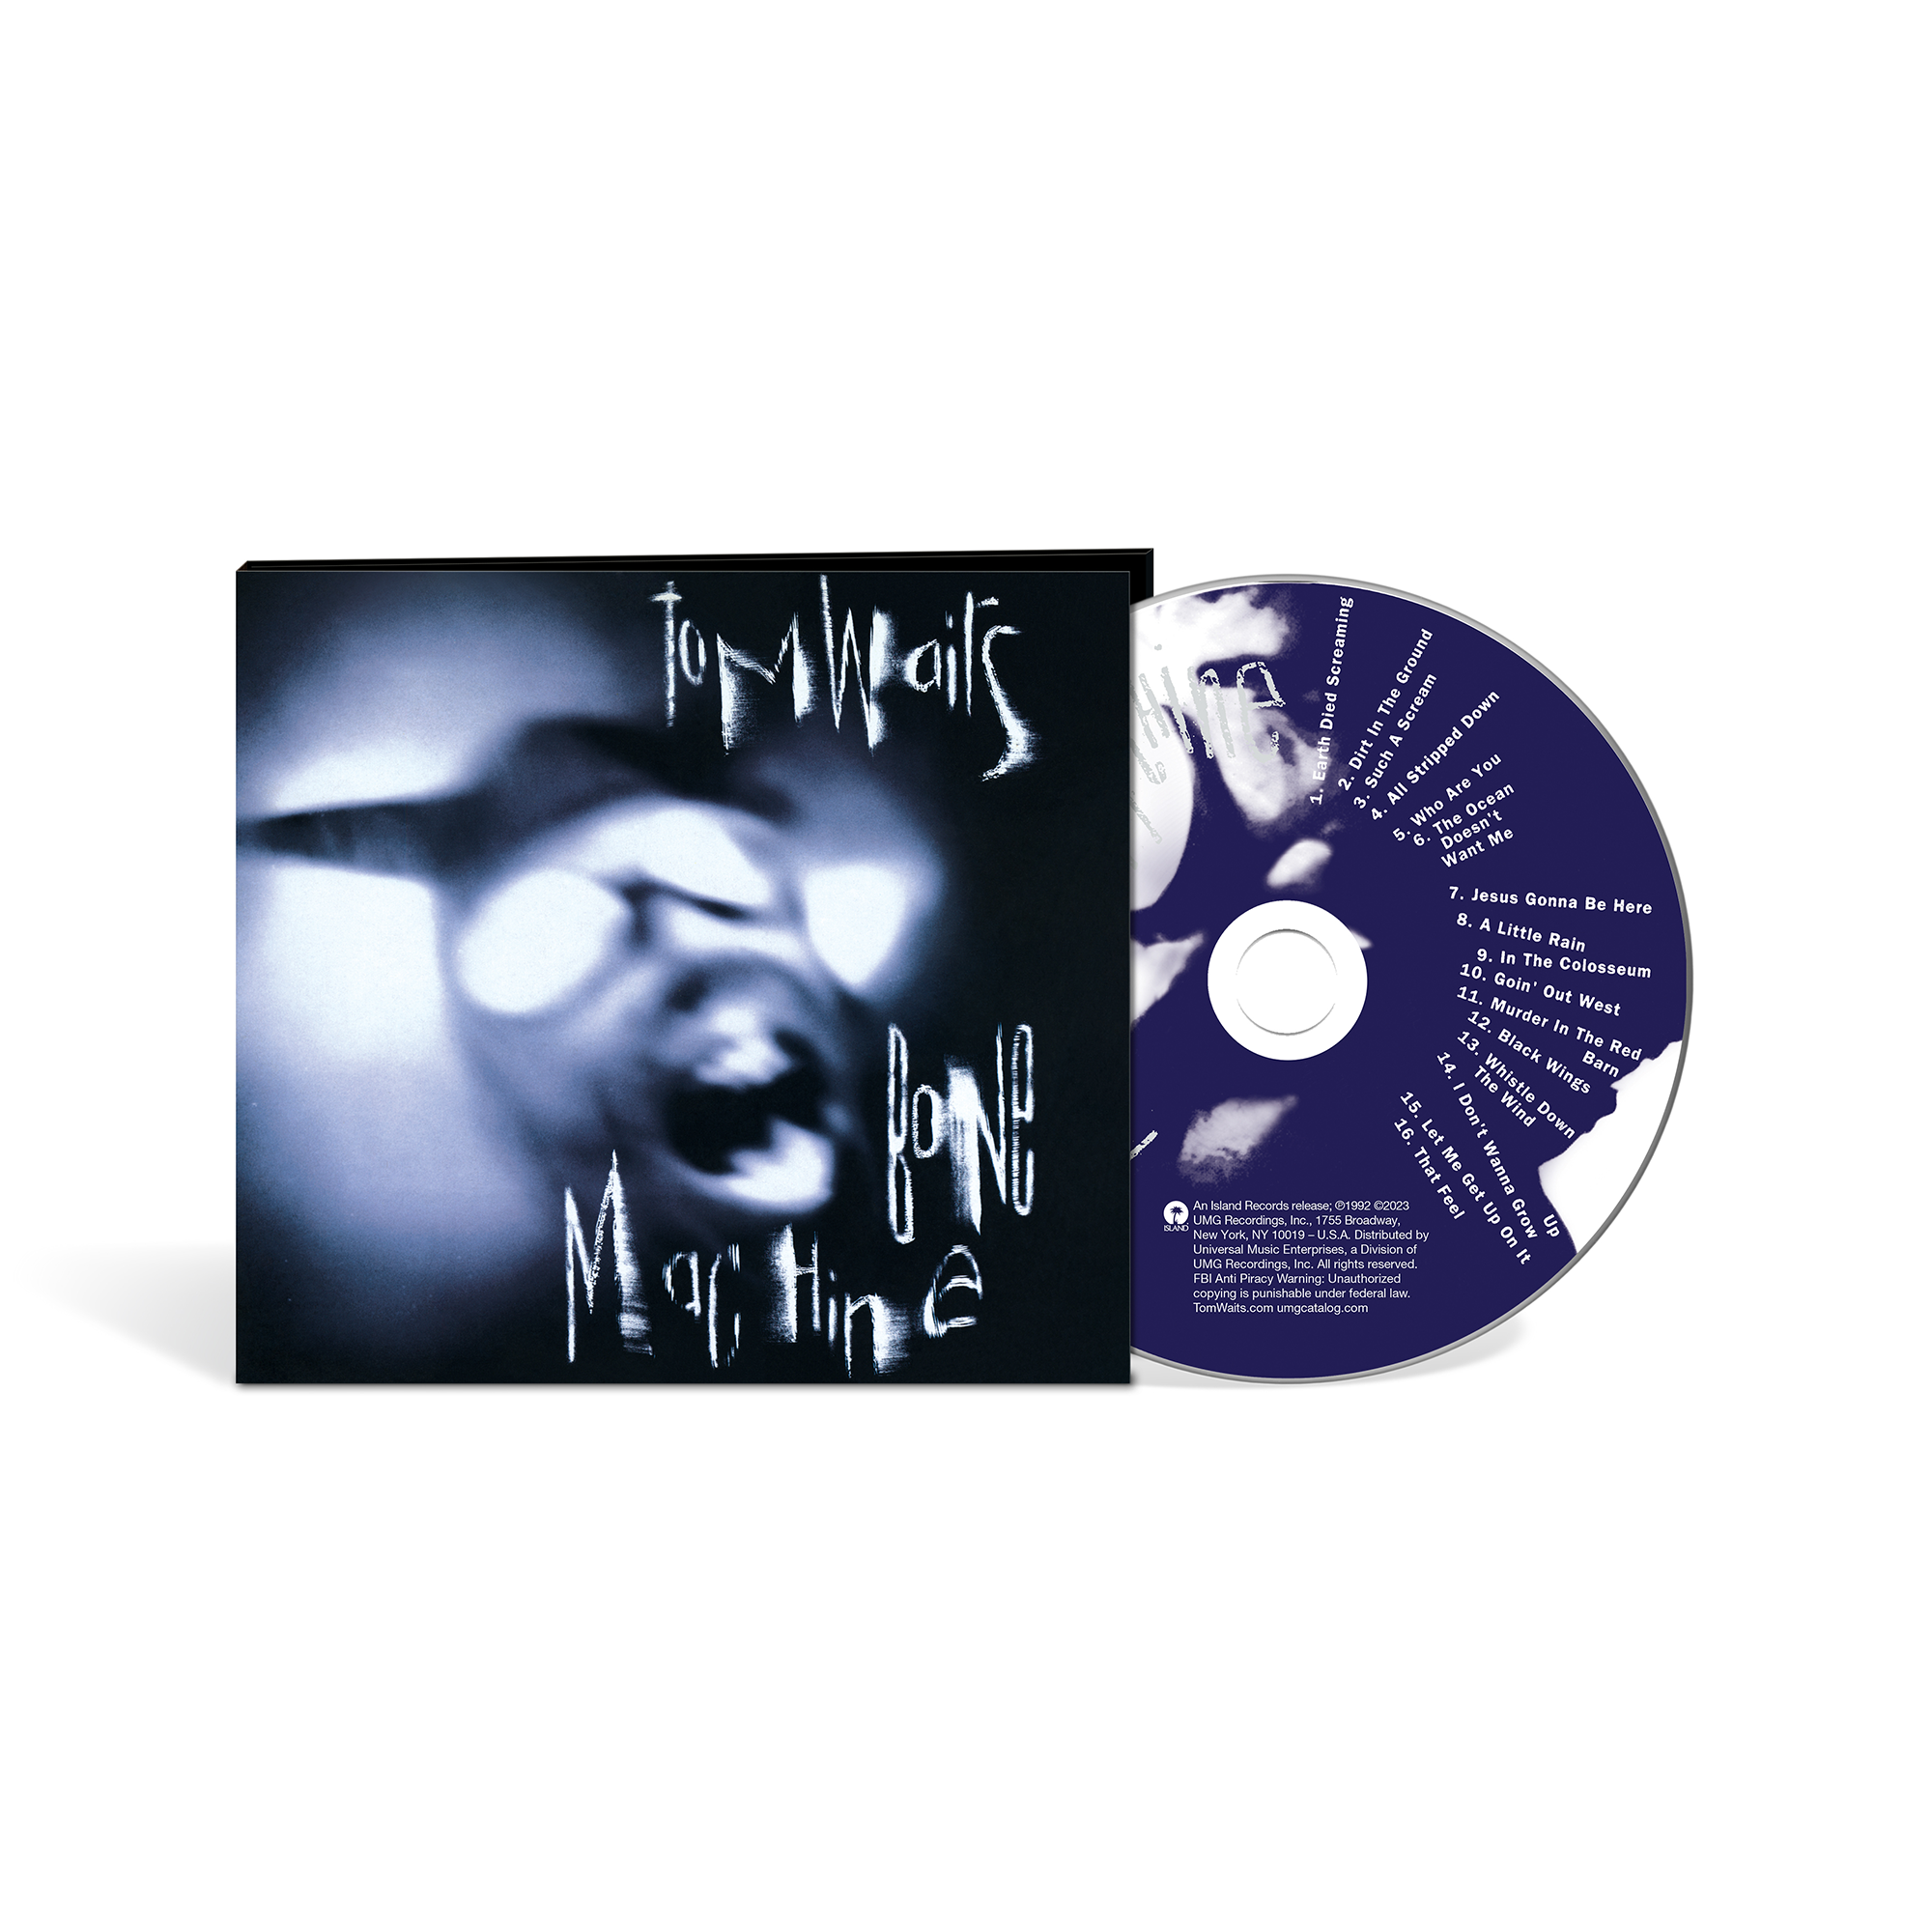 Tom Waits - Bone Machine: CD